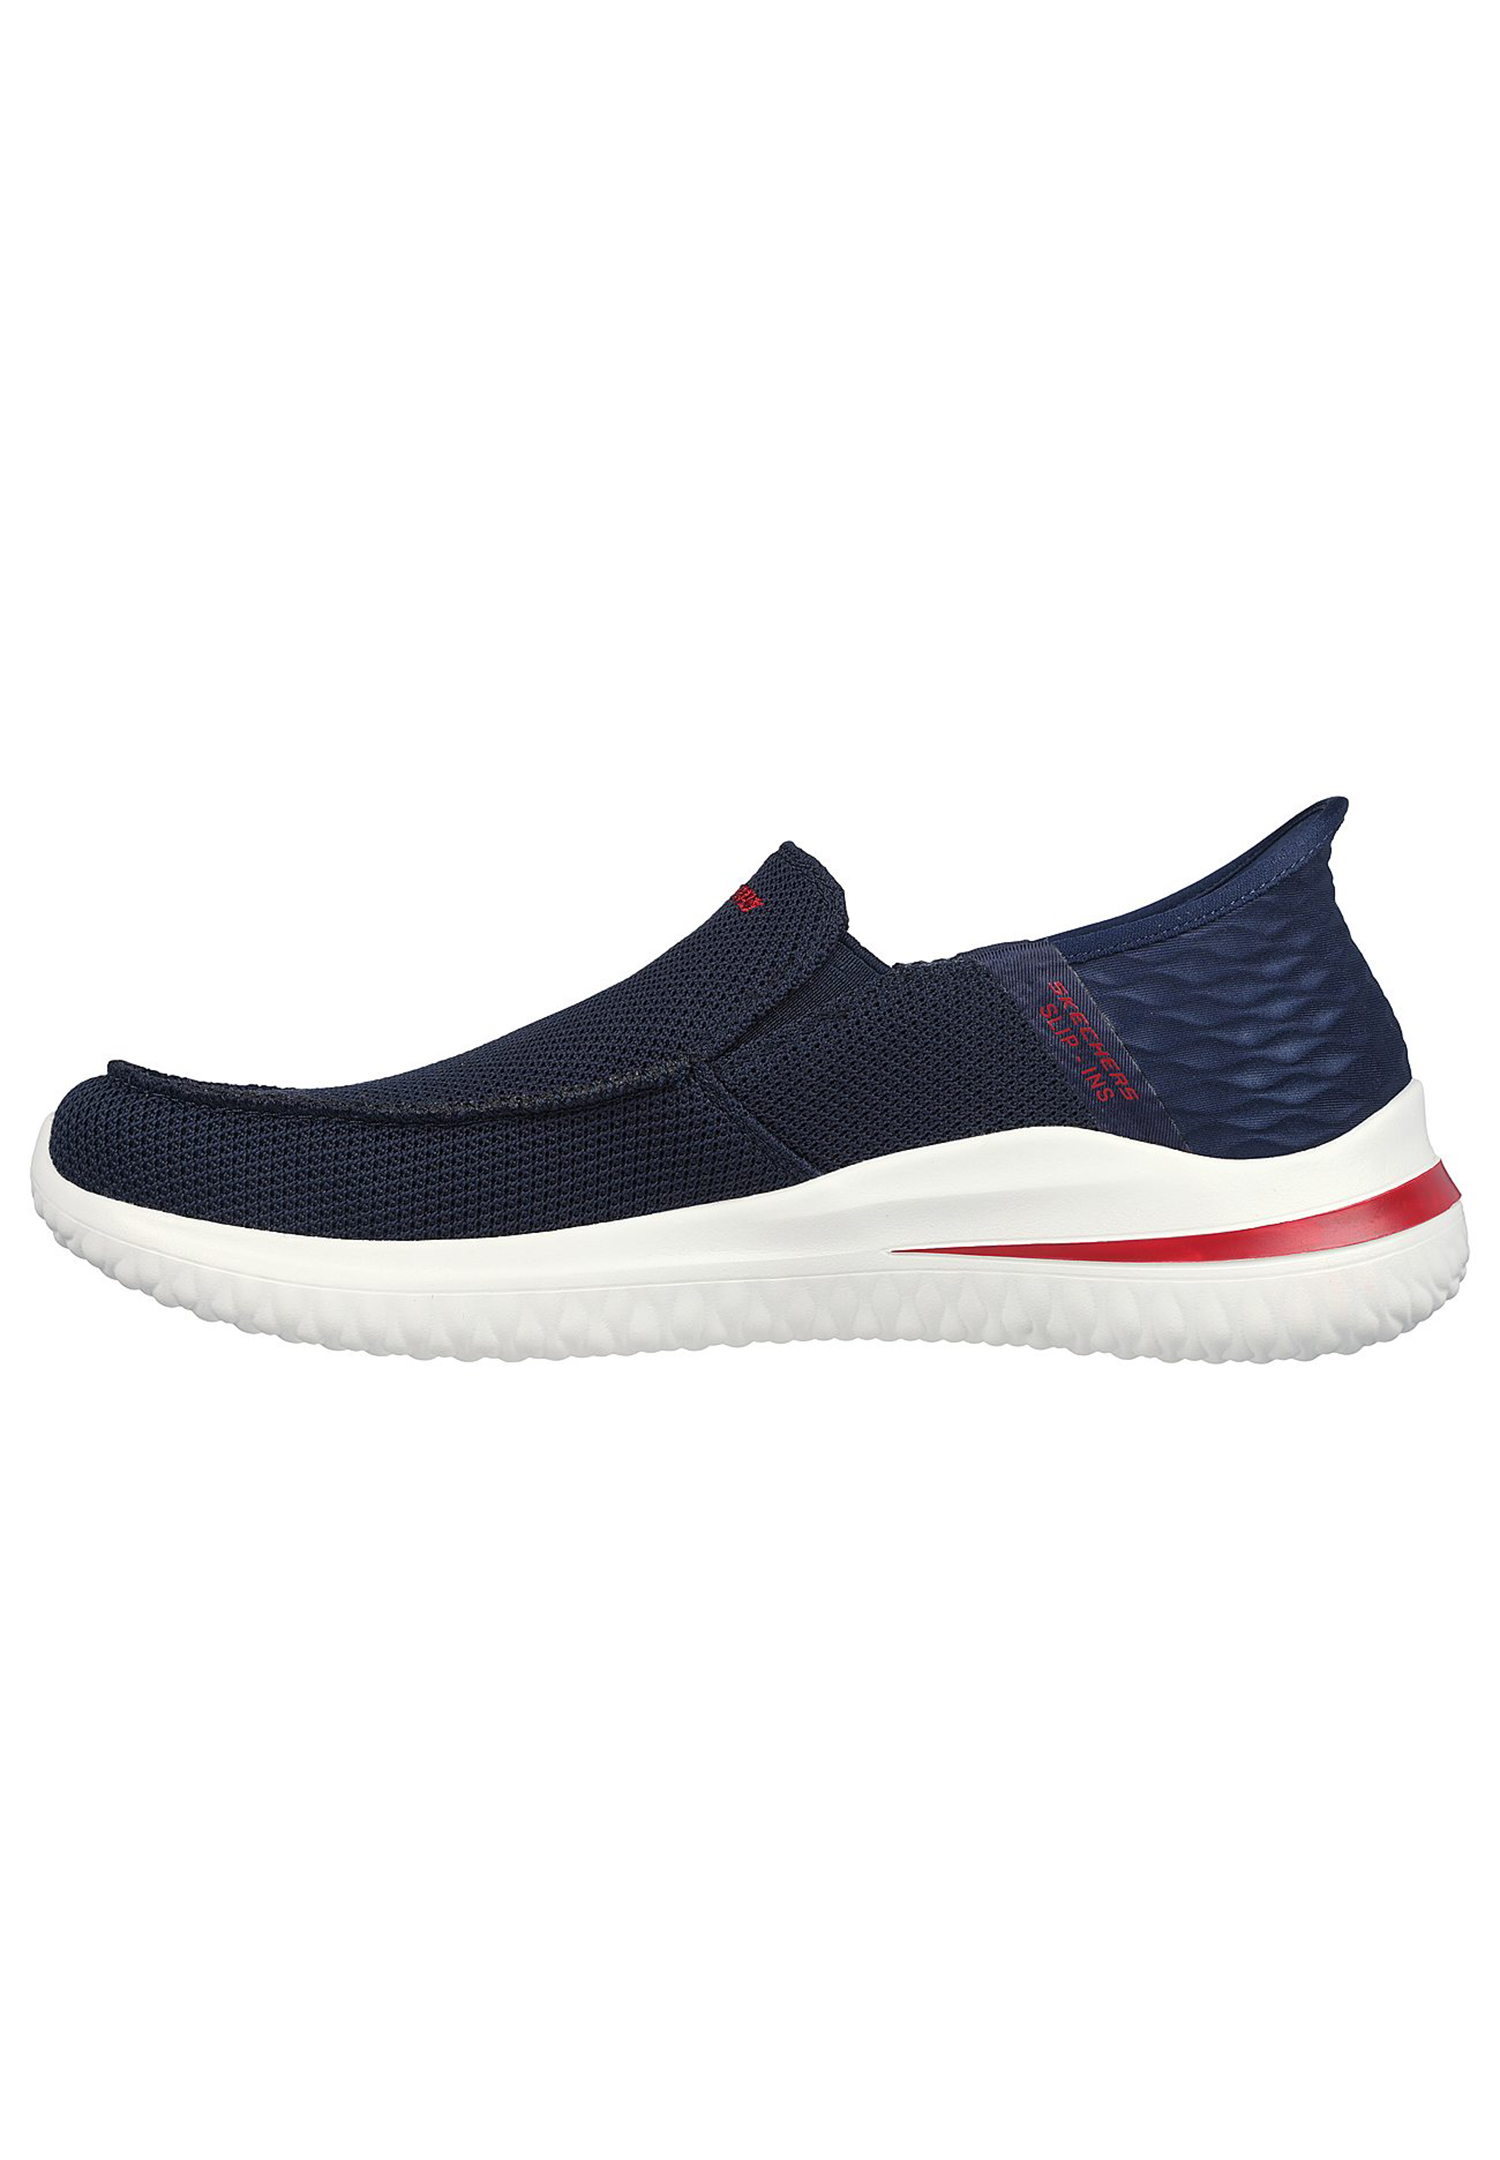 Skechers Delson 3.0 - CABRINO Herren Slip ins - Sneaker Pantolette 210604 NVY navy